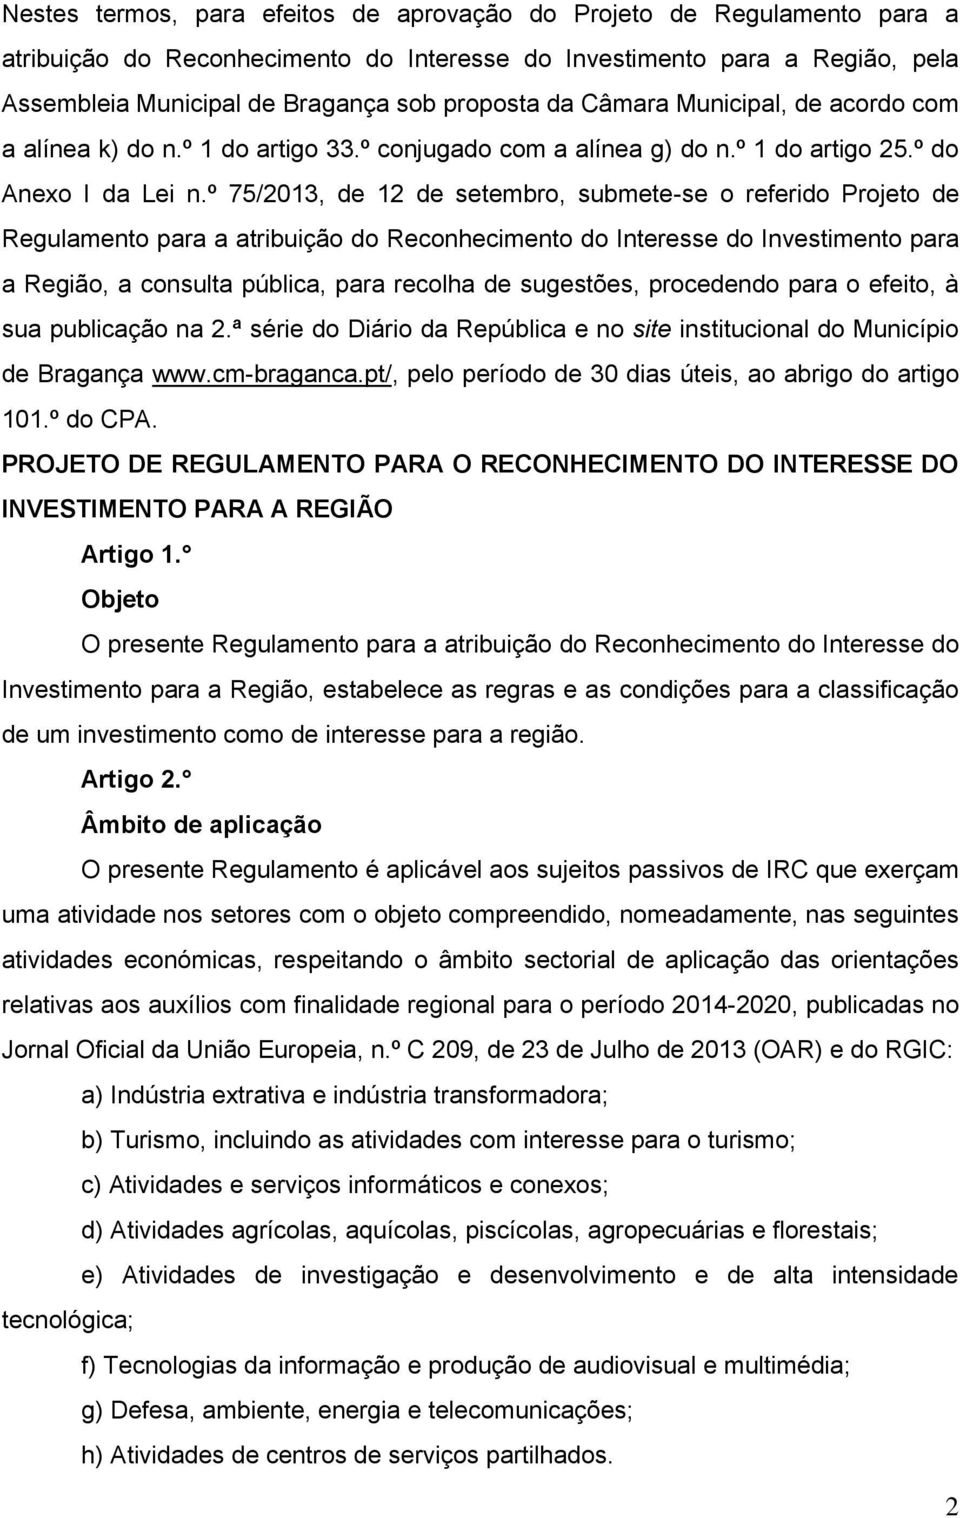 º 75/2013, de 12 de setembro, submete-se o referido Projeto de Regulamento para a atribuição do Reconhecimento do Interesse do Investimento para a Região, a consulta pública, para recolha de